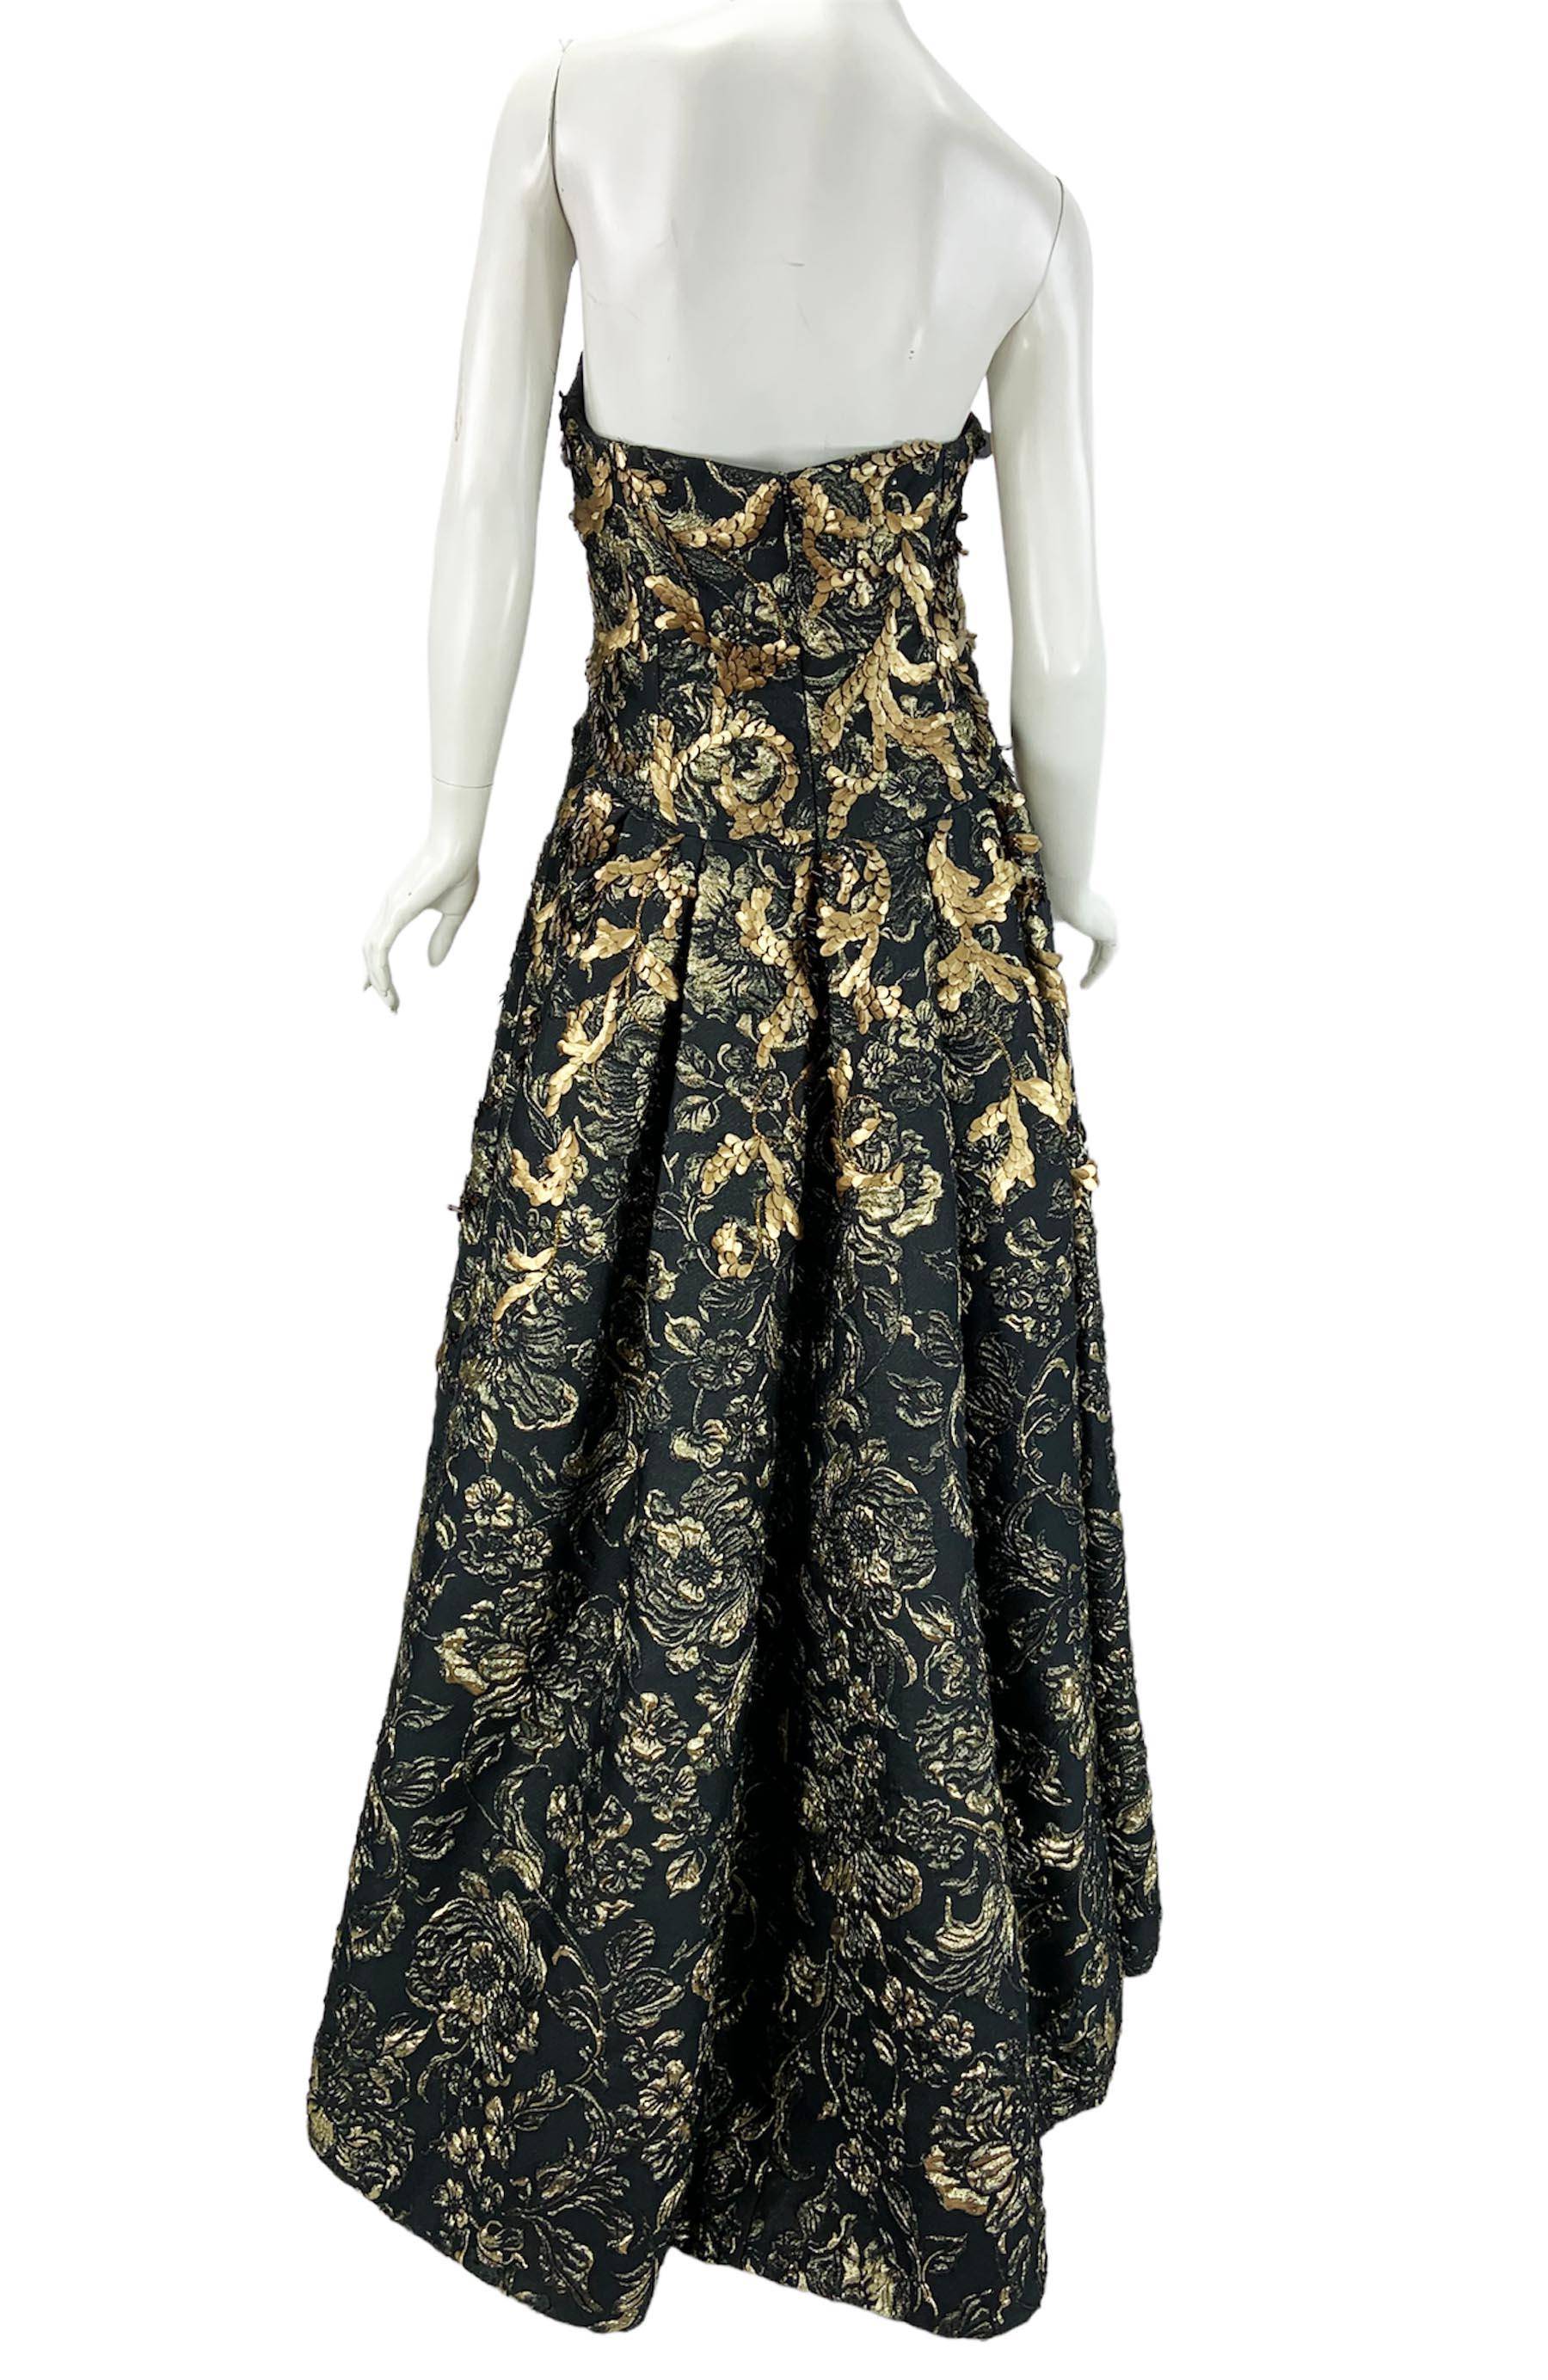 Oscar de la Renta FW 2014 Runway Museum Red Carpet Black Gold Gown Dress L / XL For Sale 3